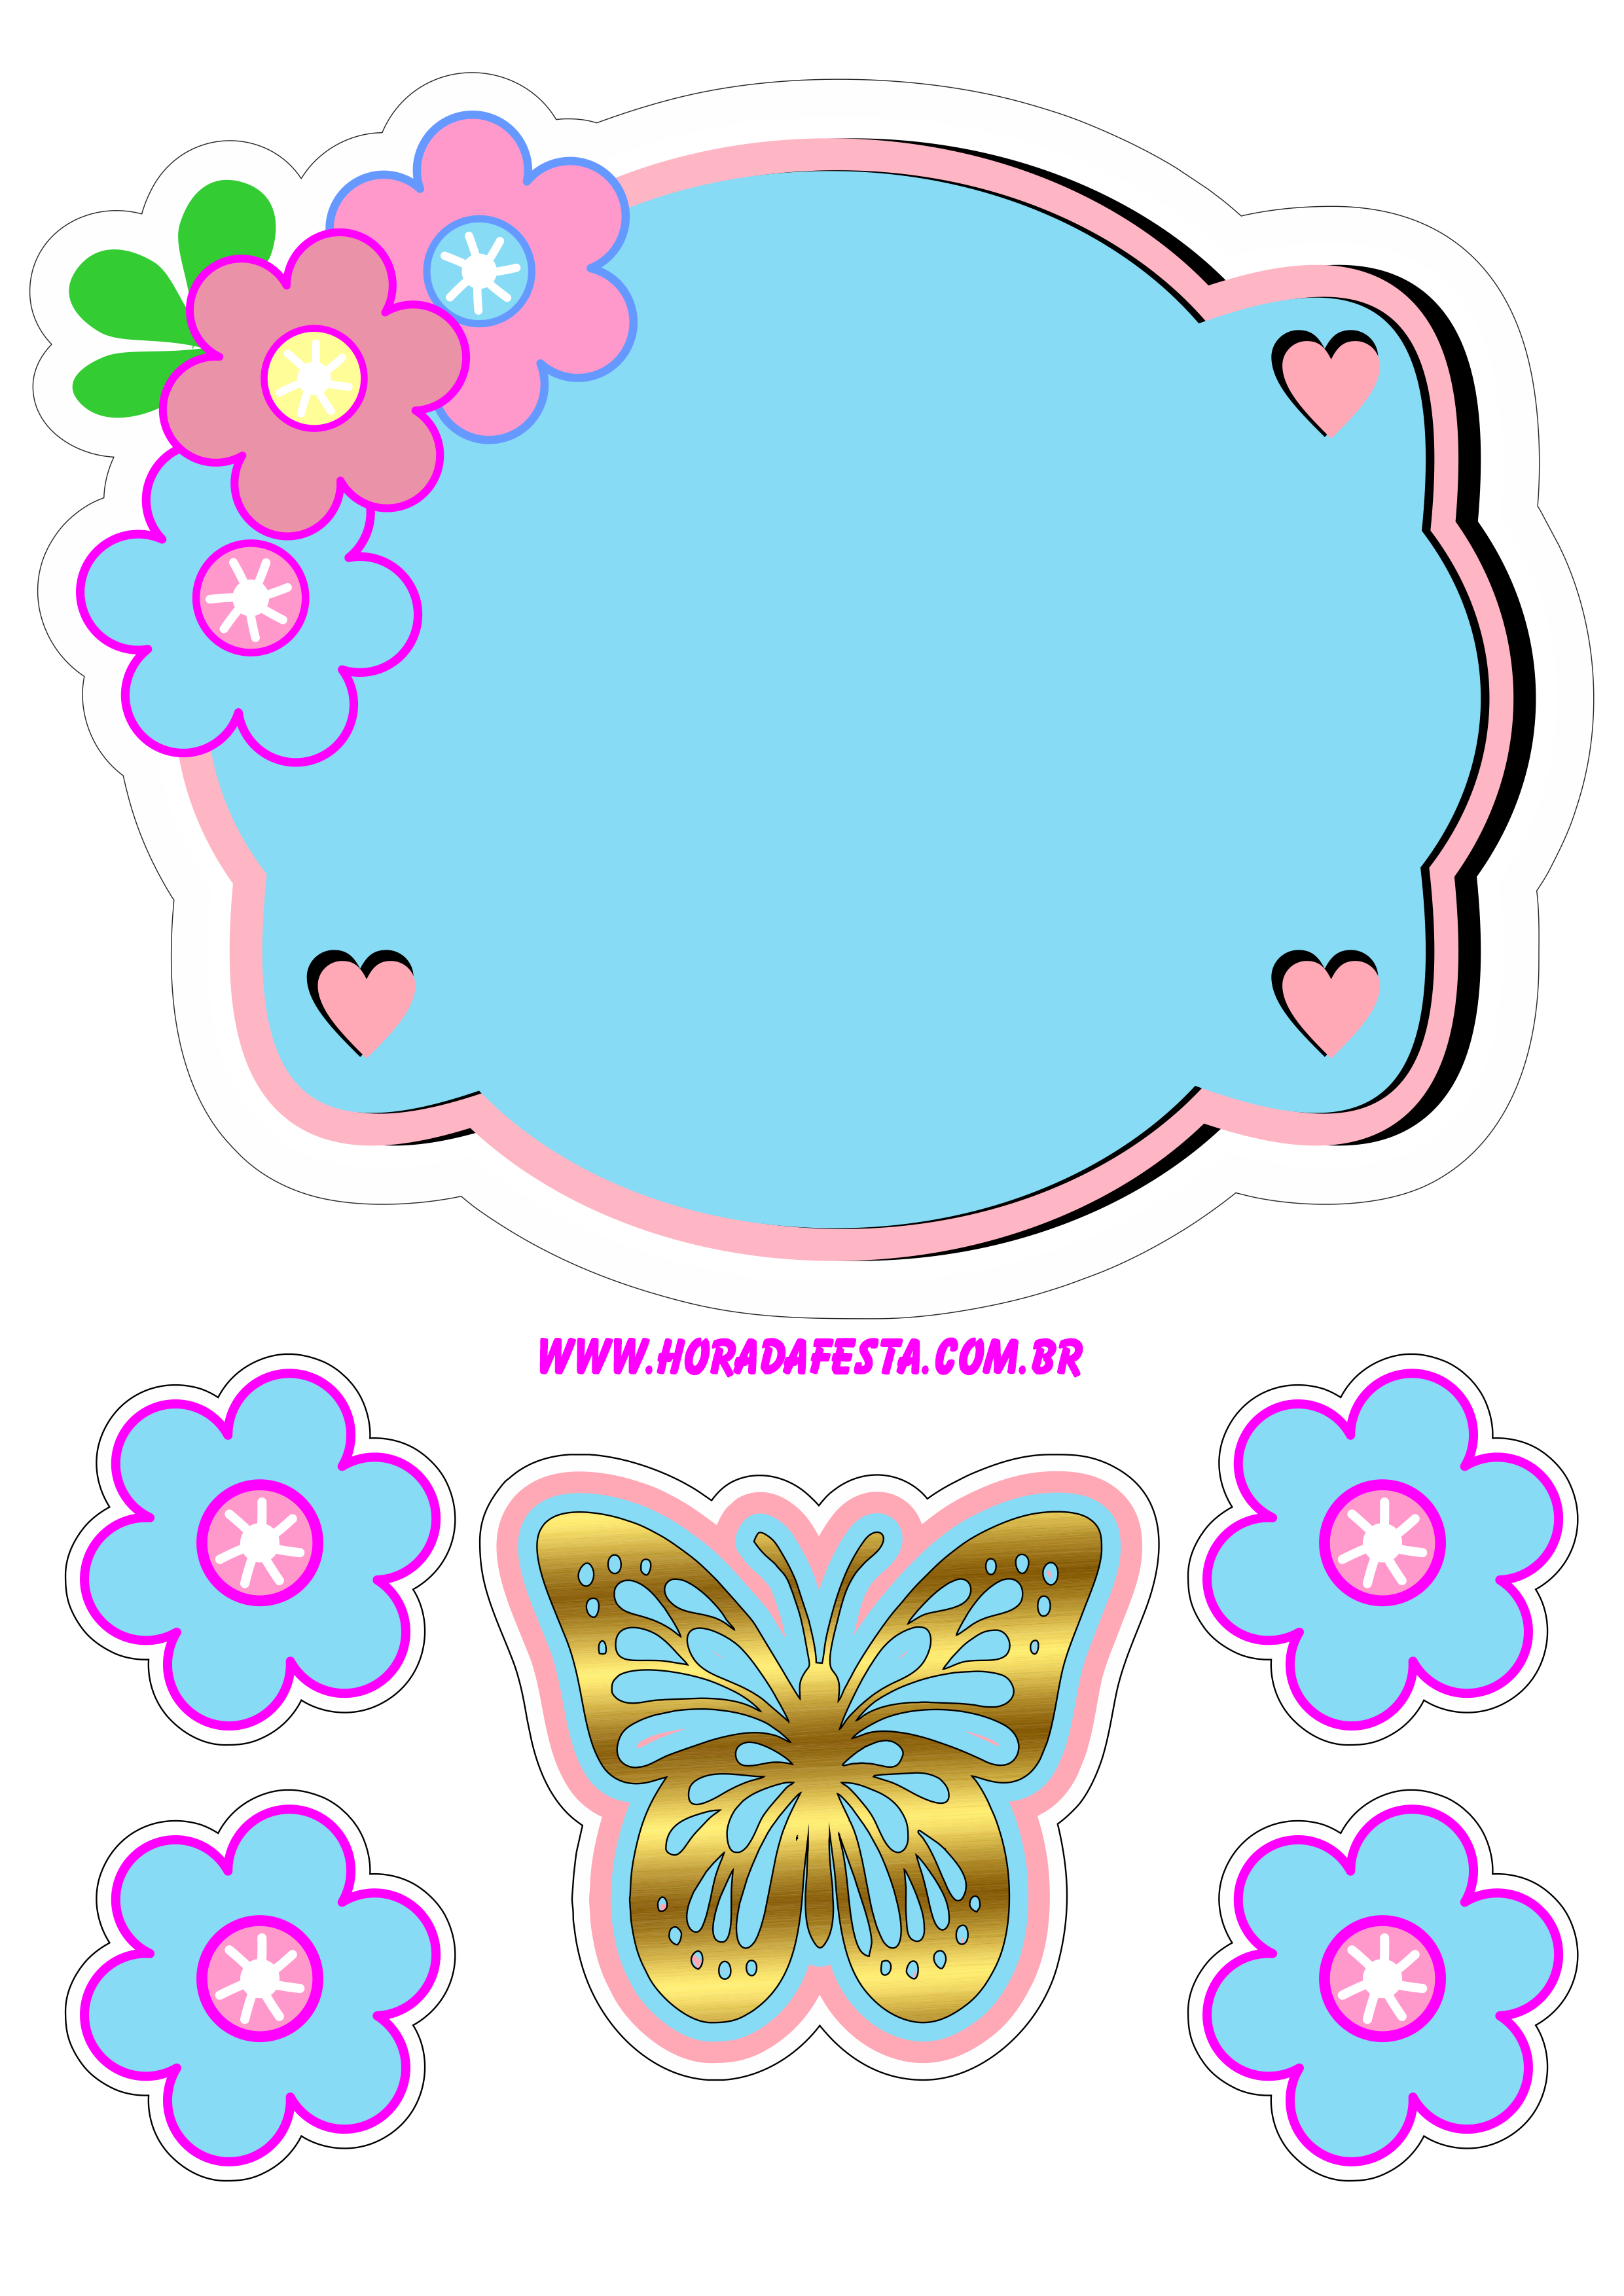 Topo de bolo para imprimir jardim encantado colorido rosa com azul plaquinha festa de aniversário temática borboleta dourada png